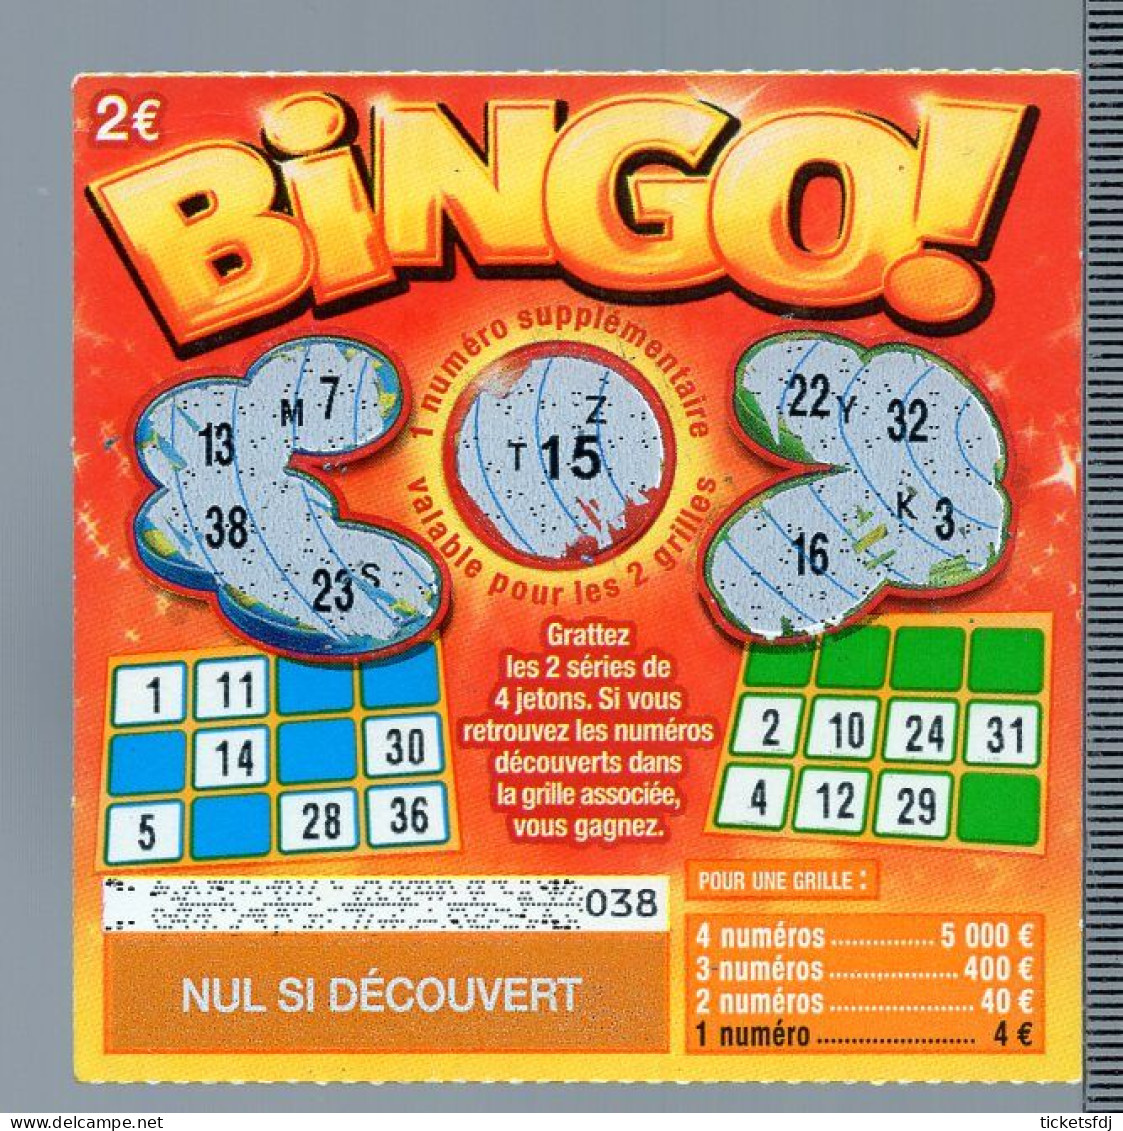 Ticket à gratter Bingo Spécial Fêtes à 3 €